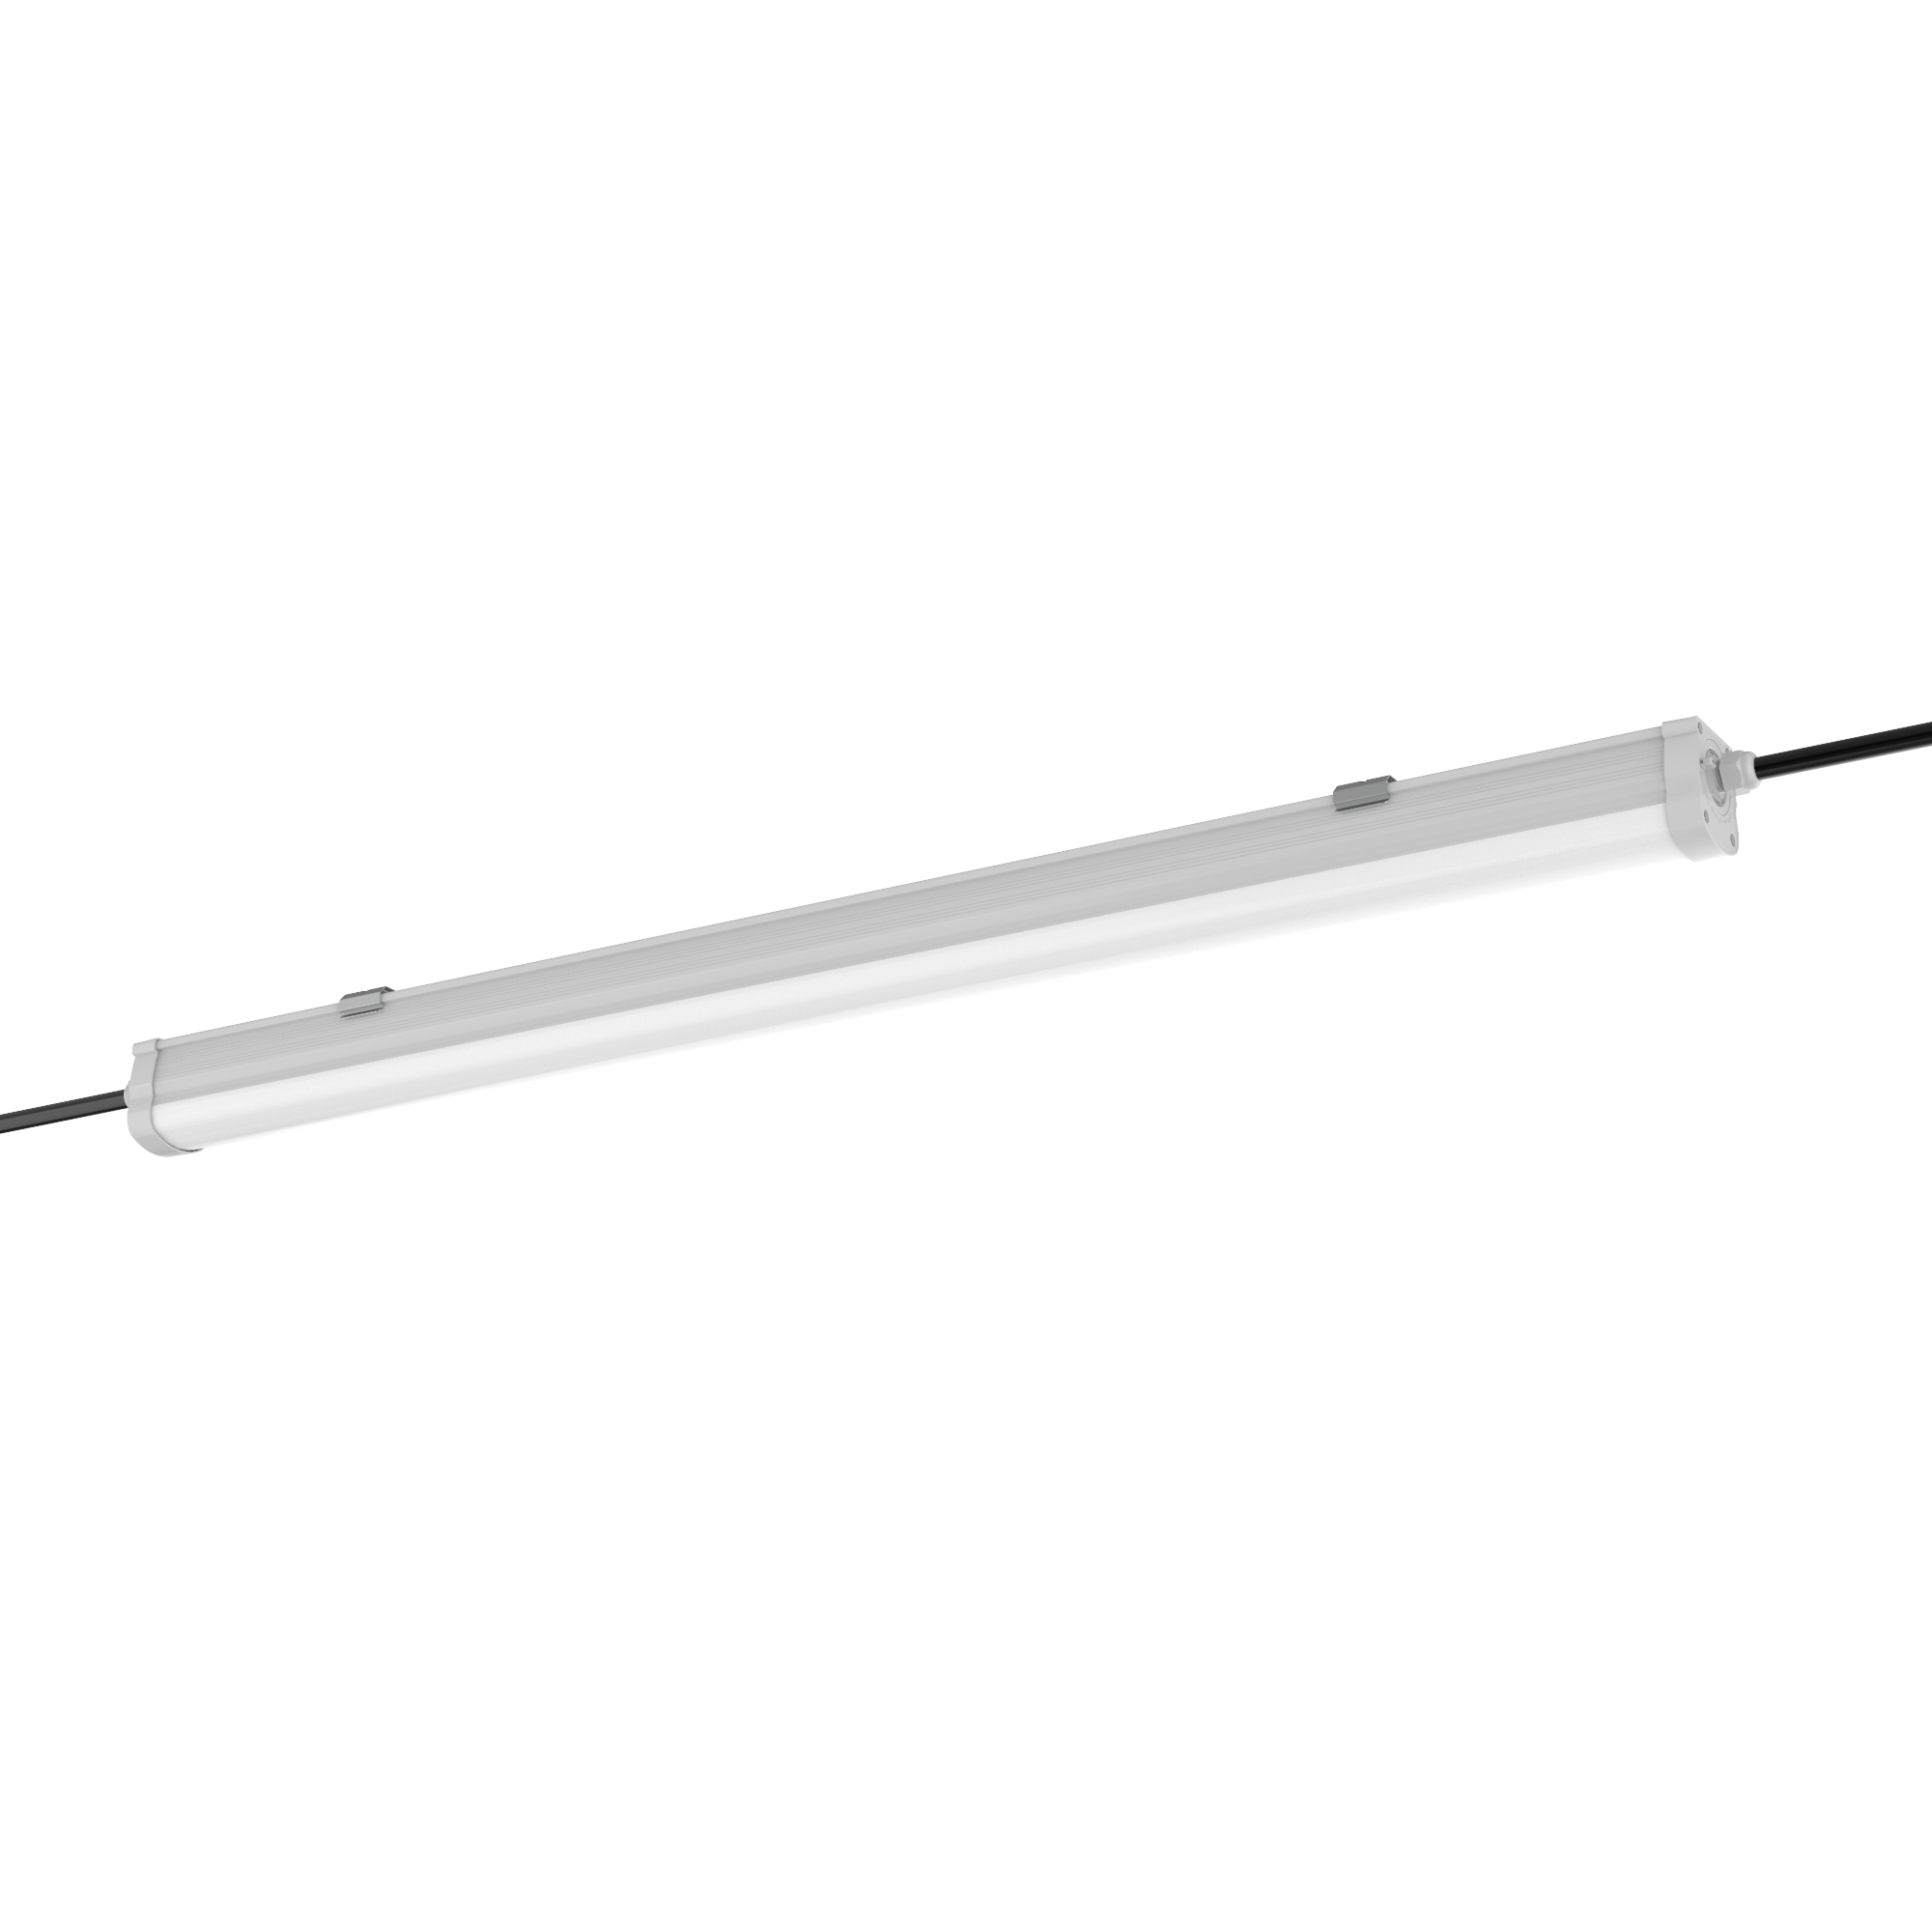 Engel LED Feuchtraumleuchte - IP65 Wasserdicht, Reihenschaltu 60-150cm